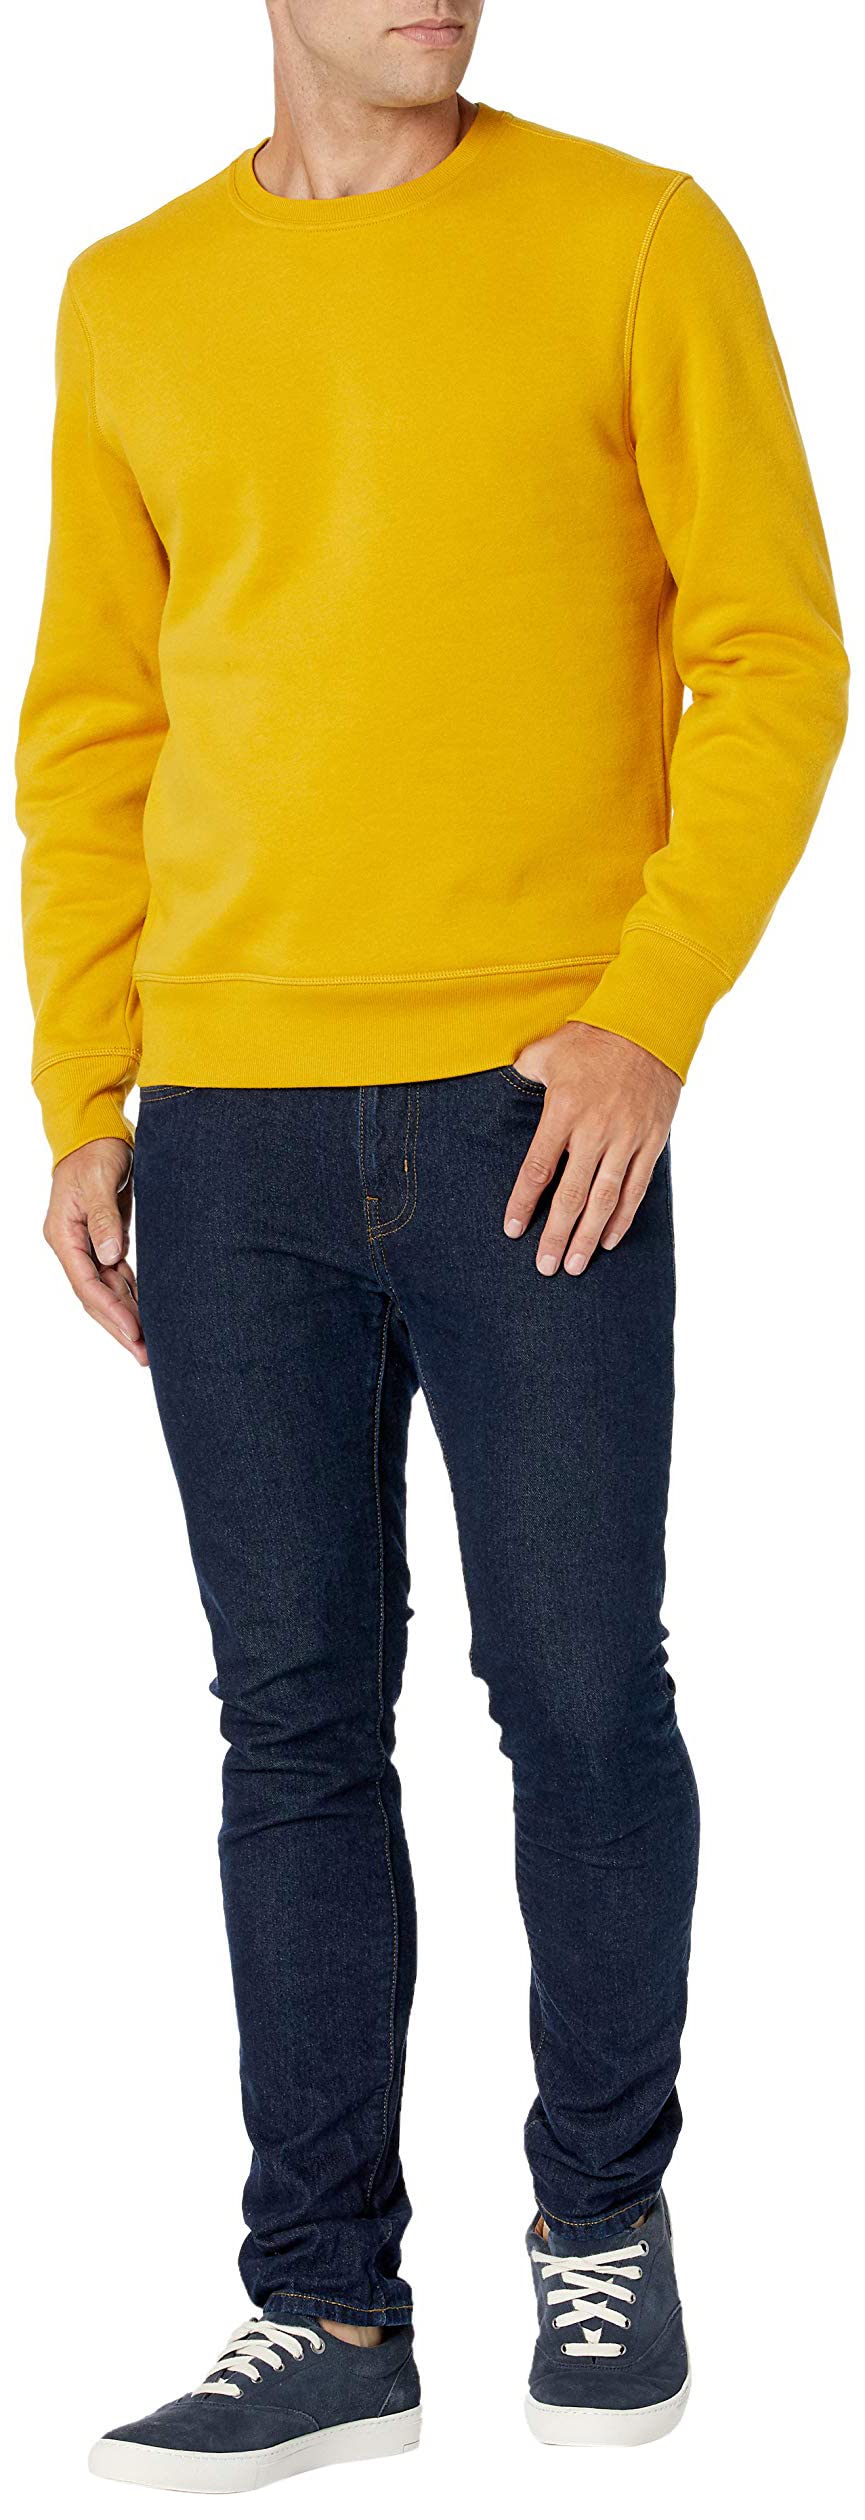 Amazon Essentials Men's Fleece Crewneck Sweatshirt (Available in Big & Tall)